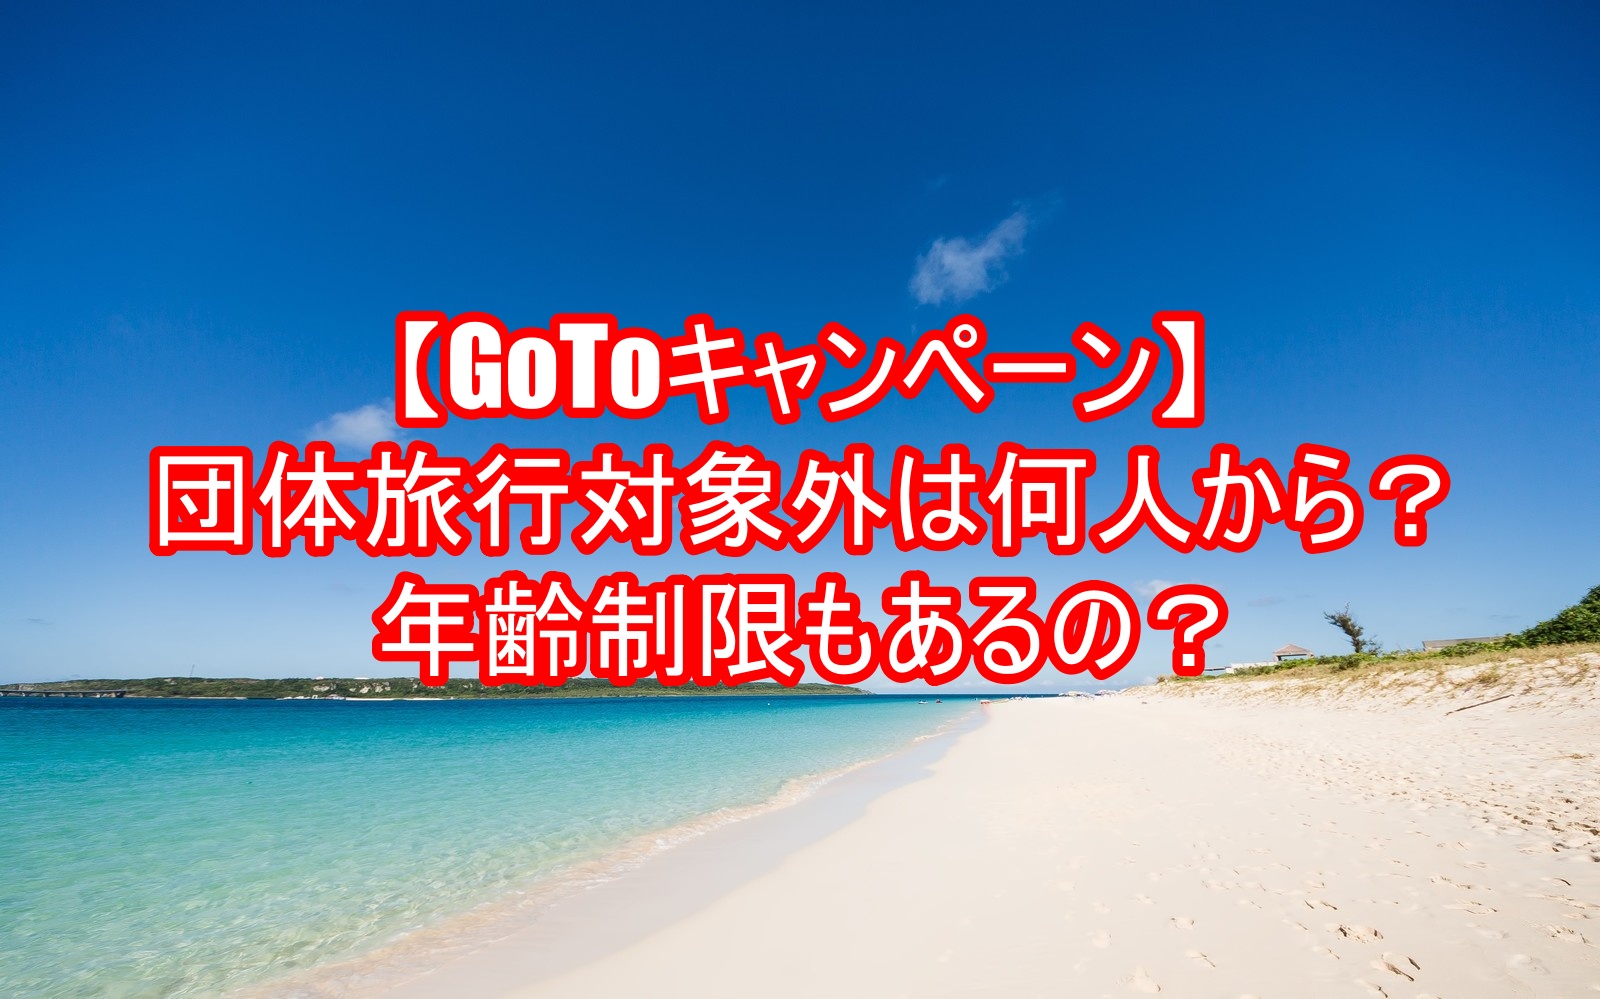 【GoToキャンペーン】団体旅行対象外は何人から？年齢制限もあるの？5